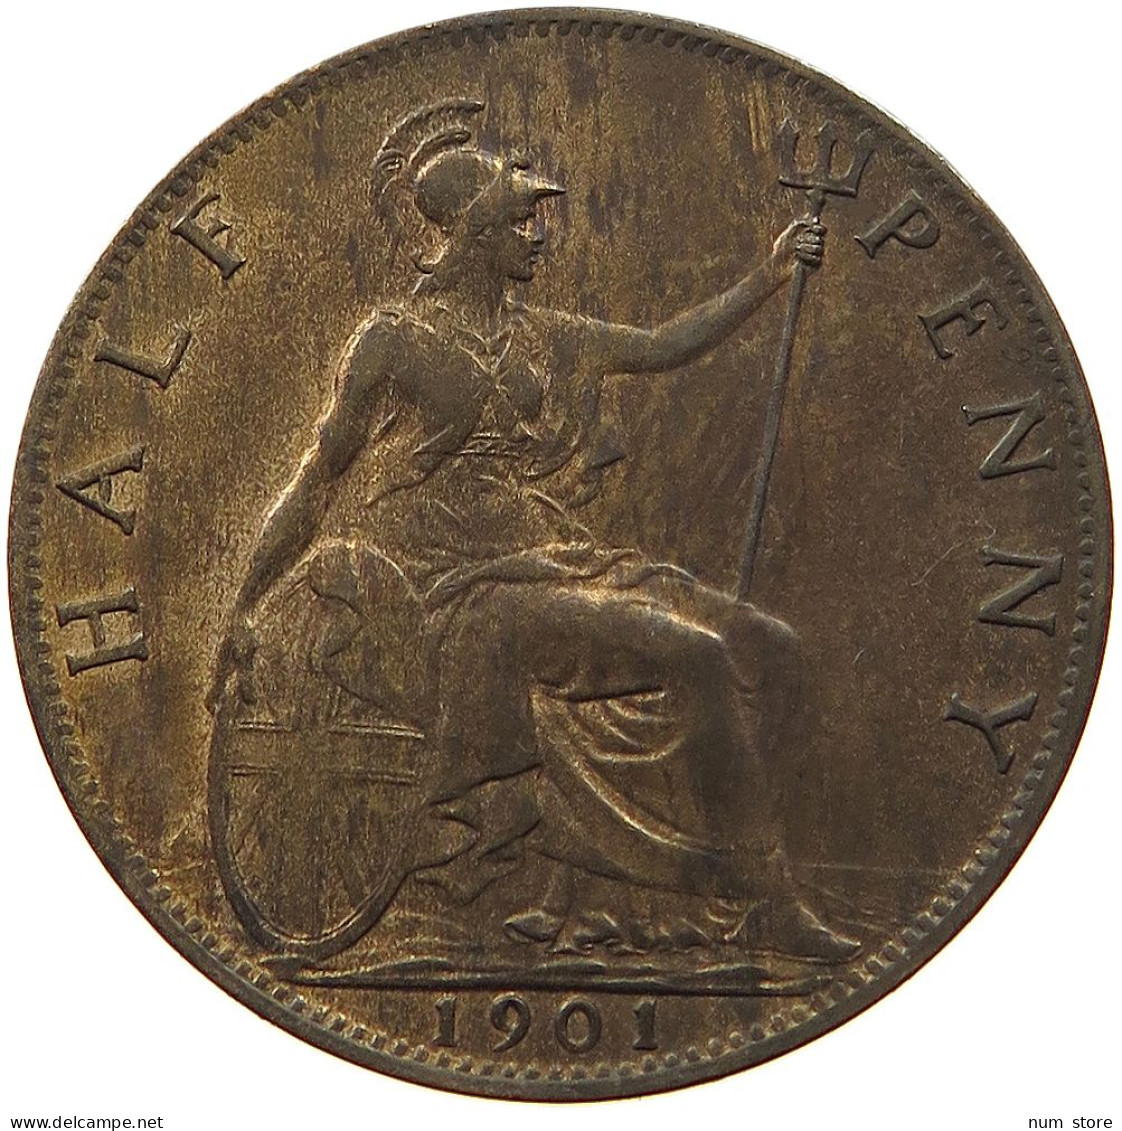 GREAT BRITAIN HALF PENNY 1901 Victoria 1837-1901 #t058 0529 - C. 1/2 Penny